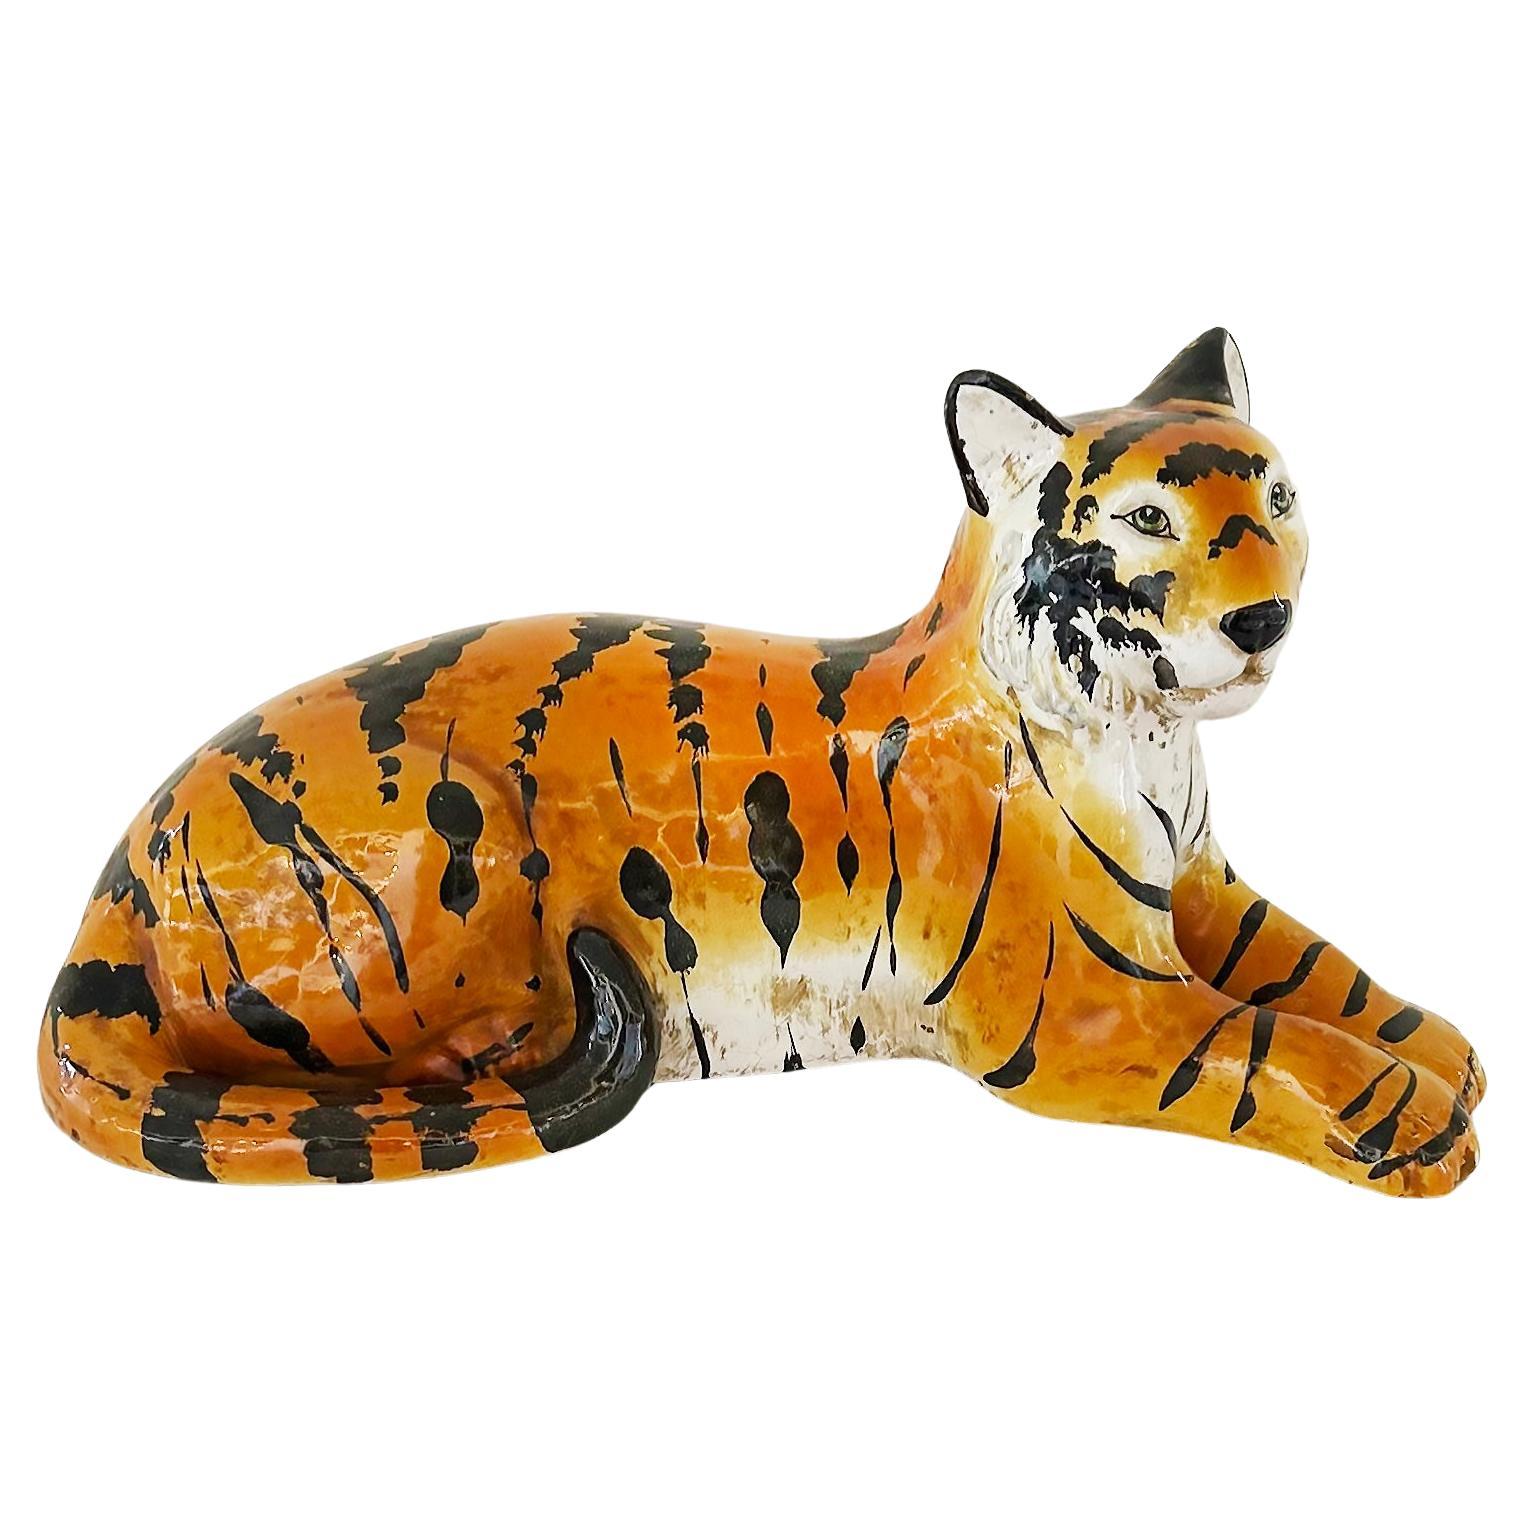 Italian Glazed Ceramic Sculpture of a Tiger in repose, Circa 1960s For Sale